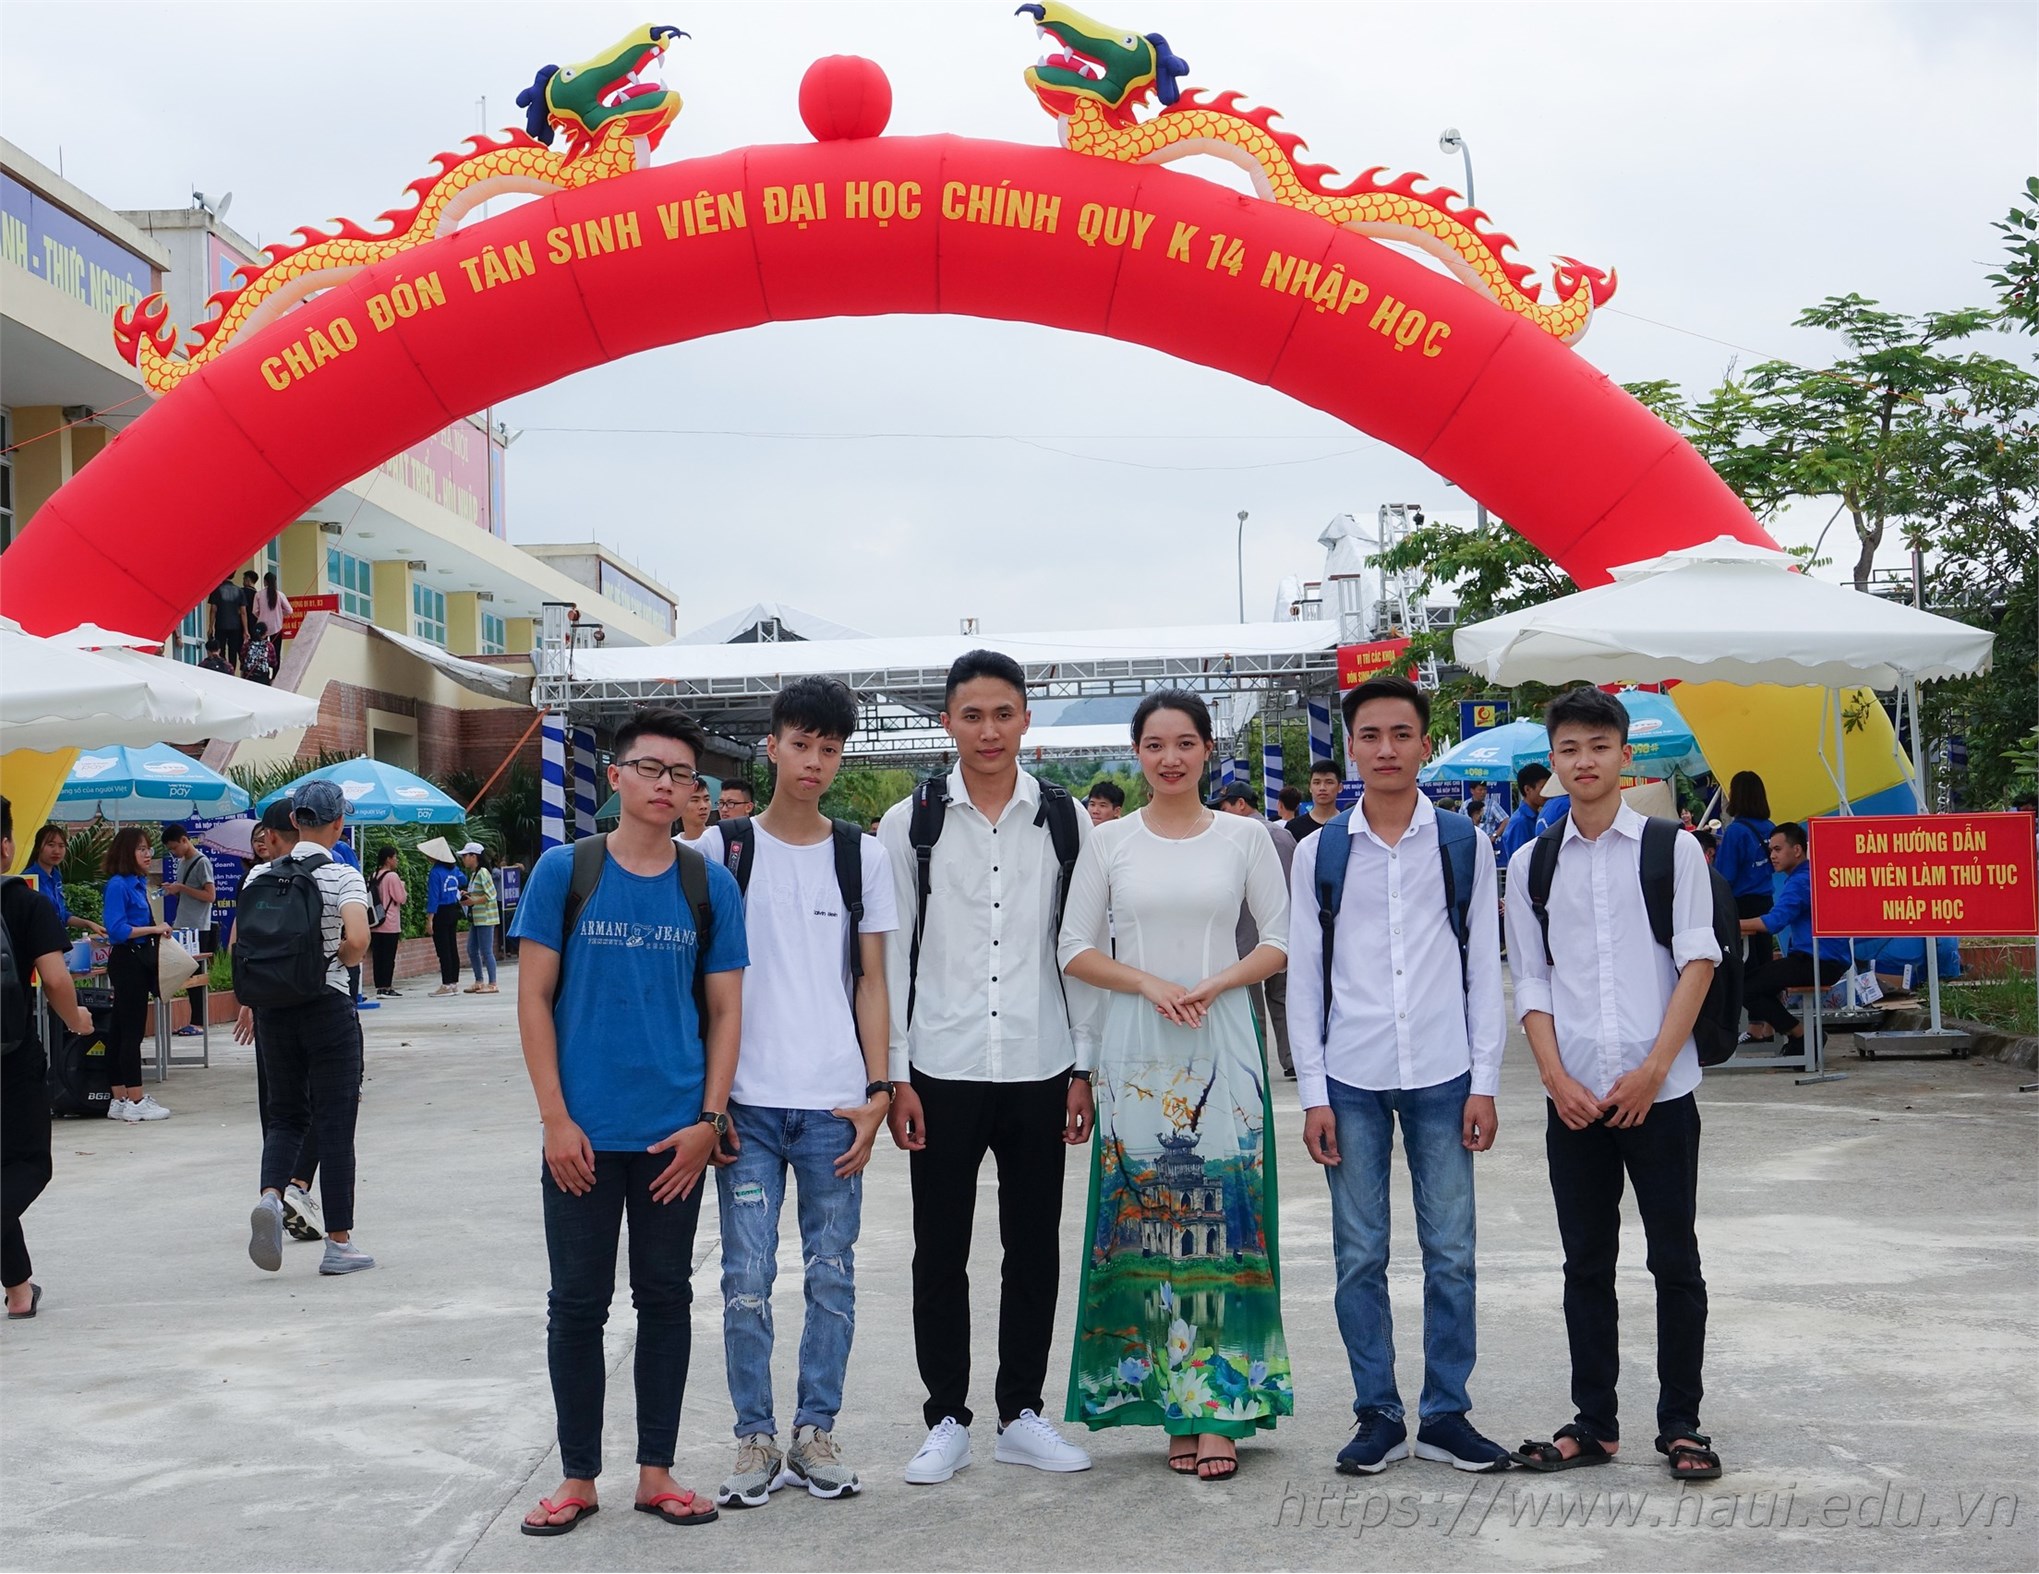 Tưng bừng ngày hội chào đón tân sinh viên Đại học Công nghiệp Hà Nội